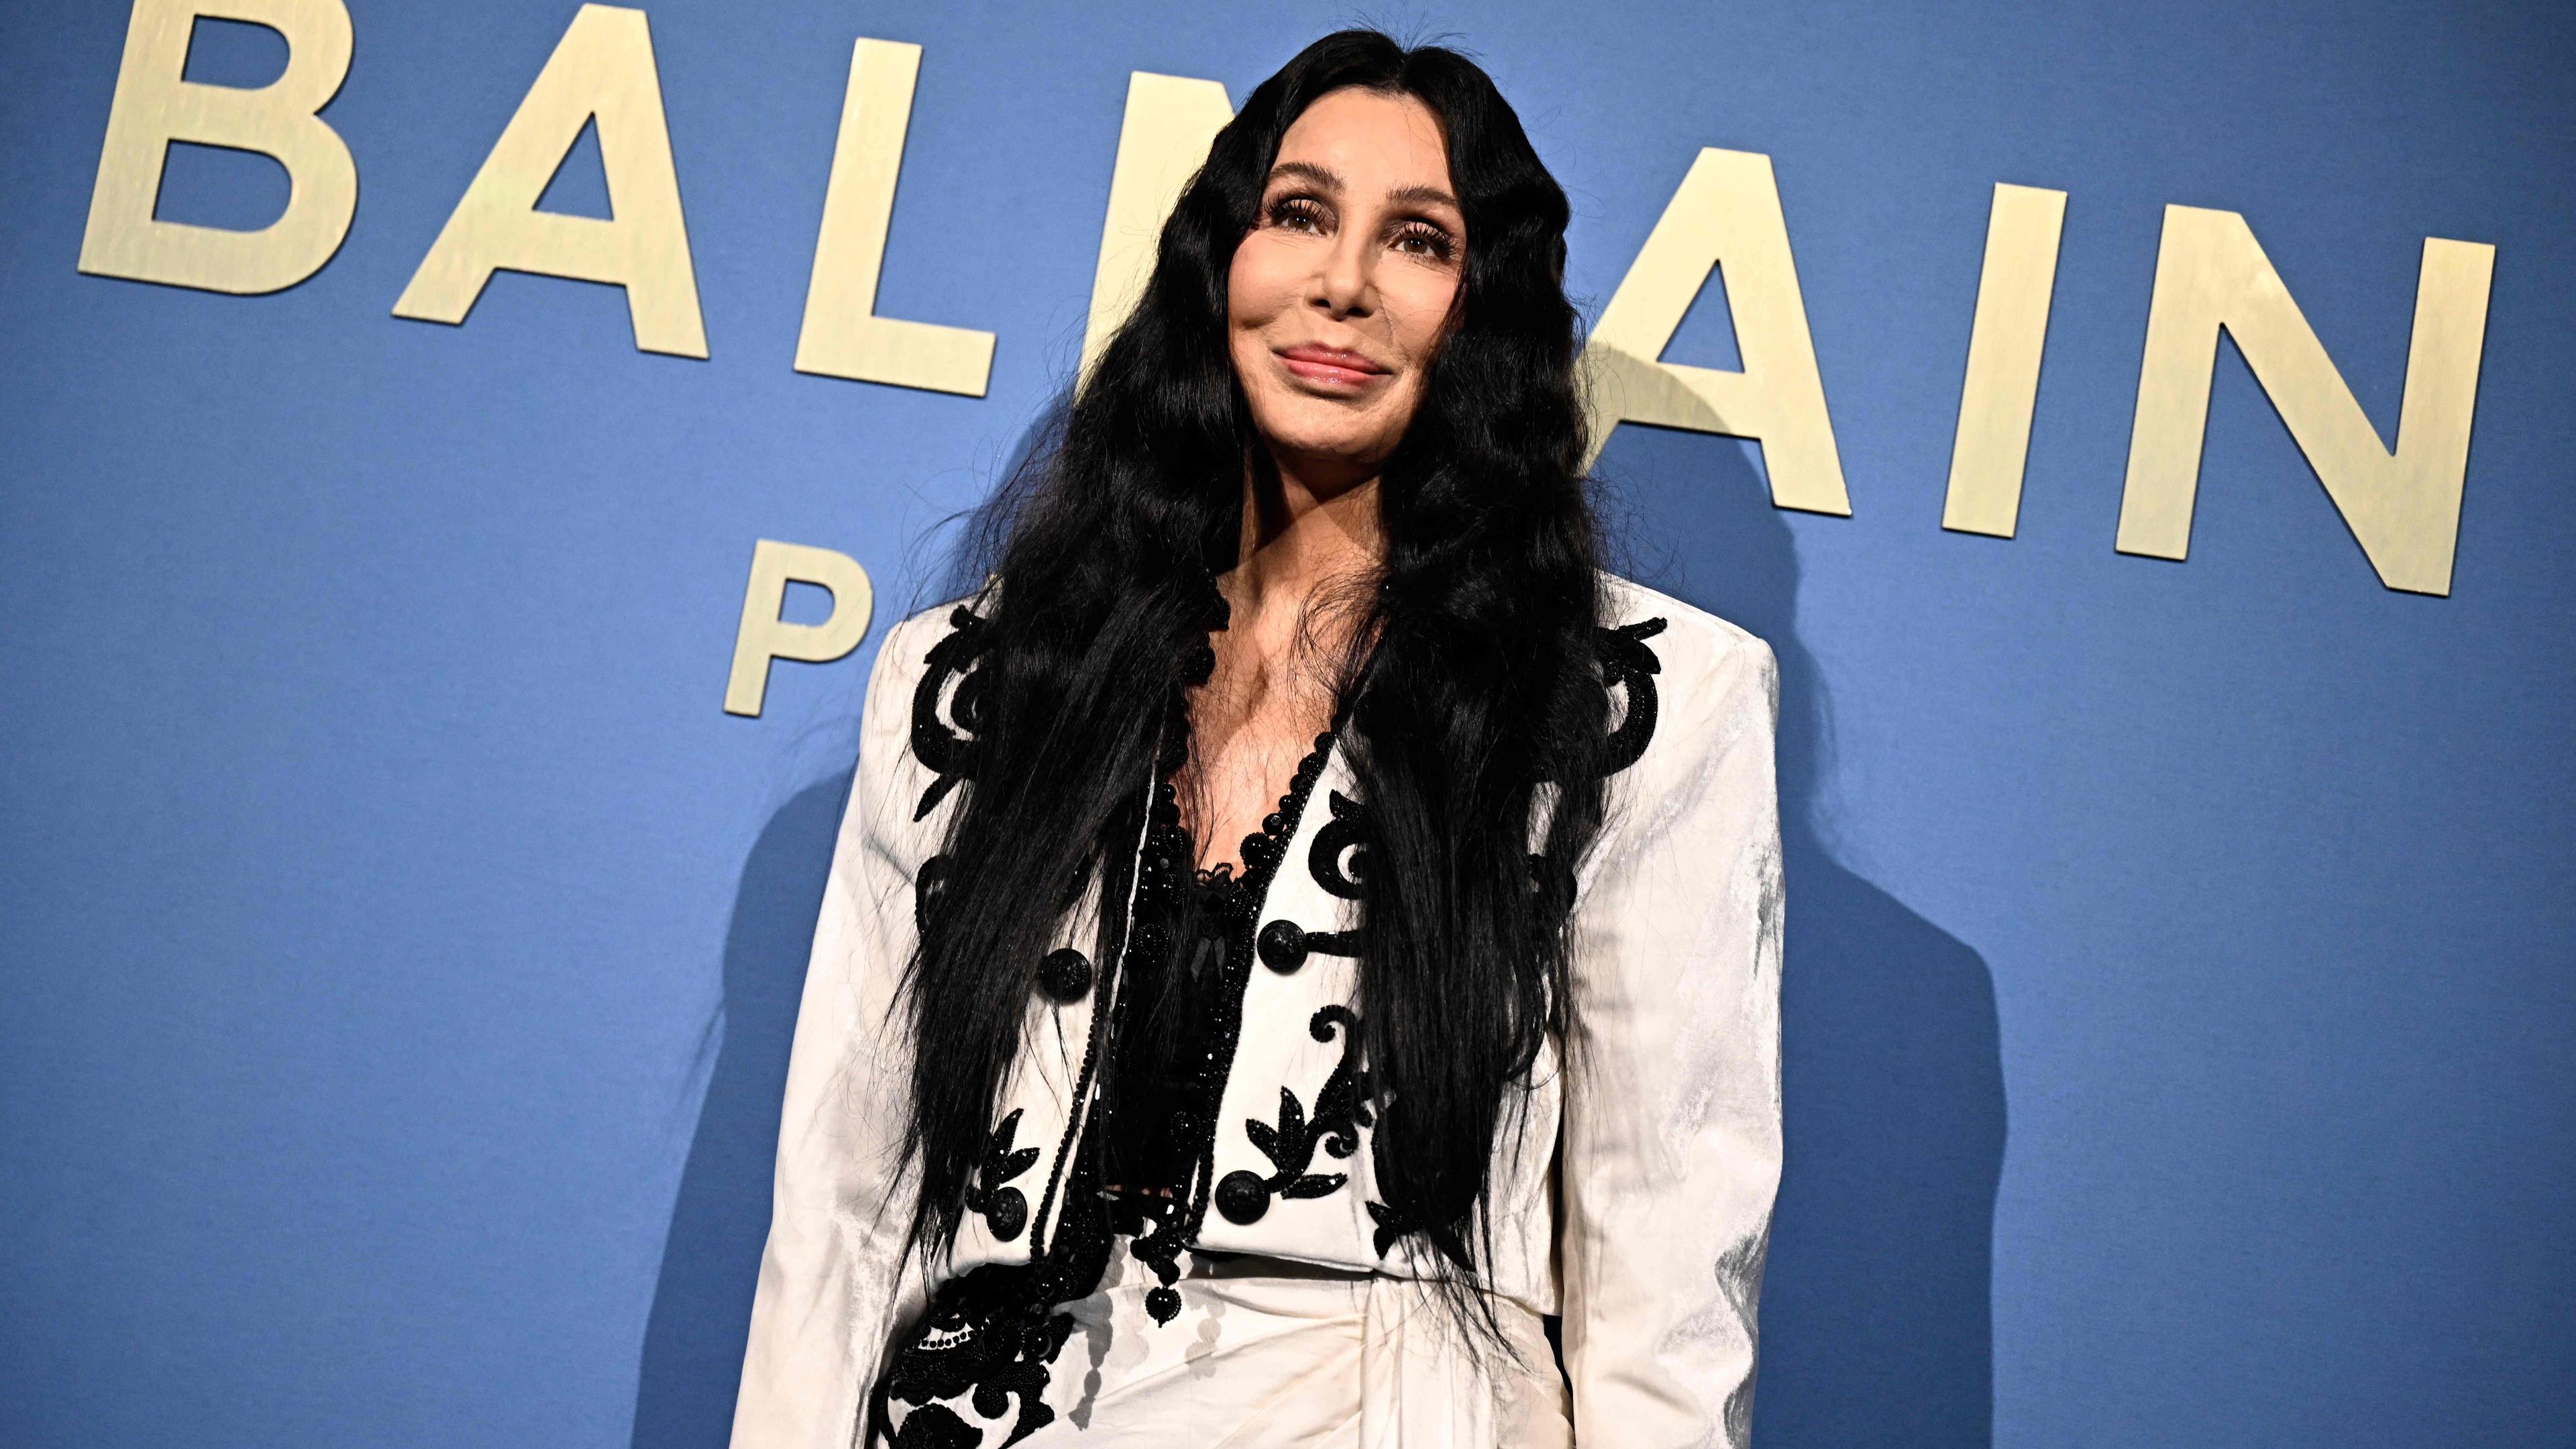 ARCHIV, 27.09.23, Paris: Cher steht vor einer Fotowand und lächelt.